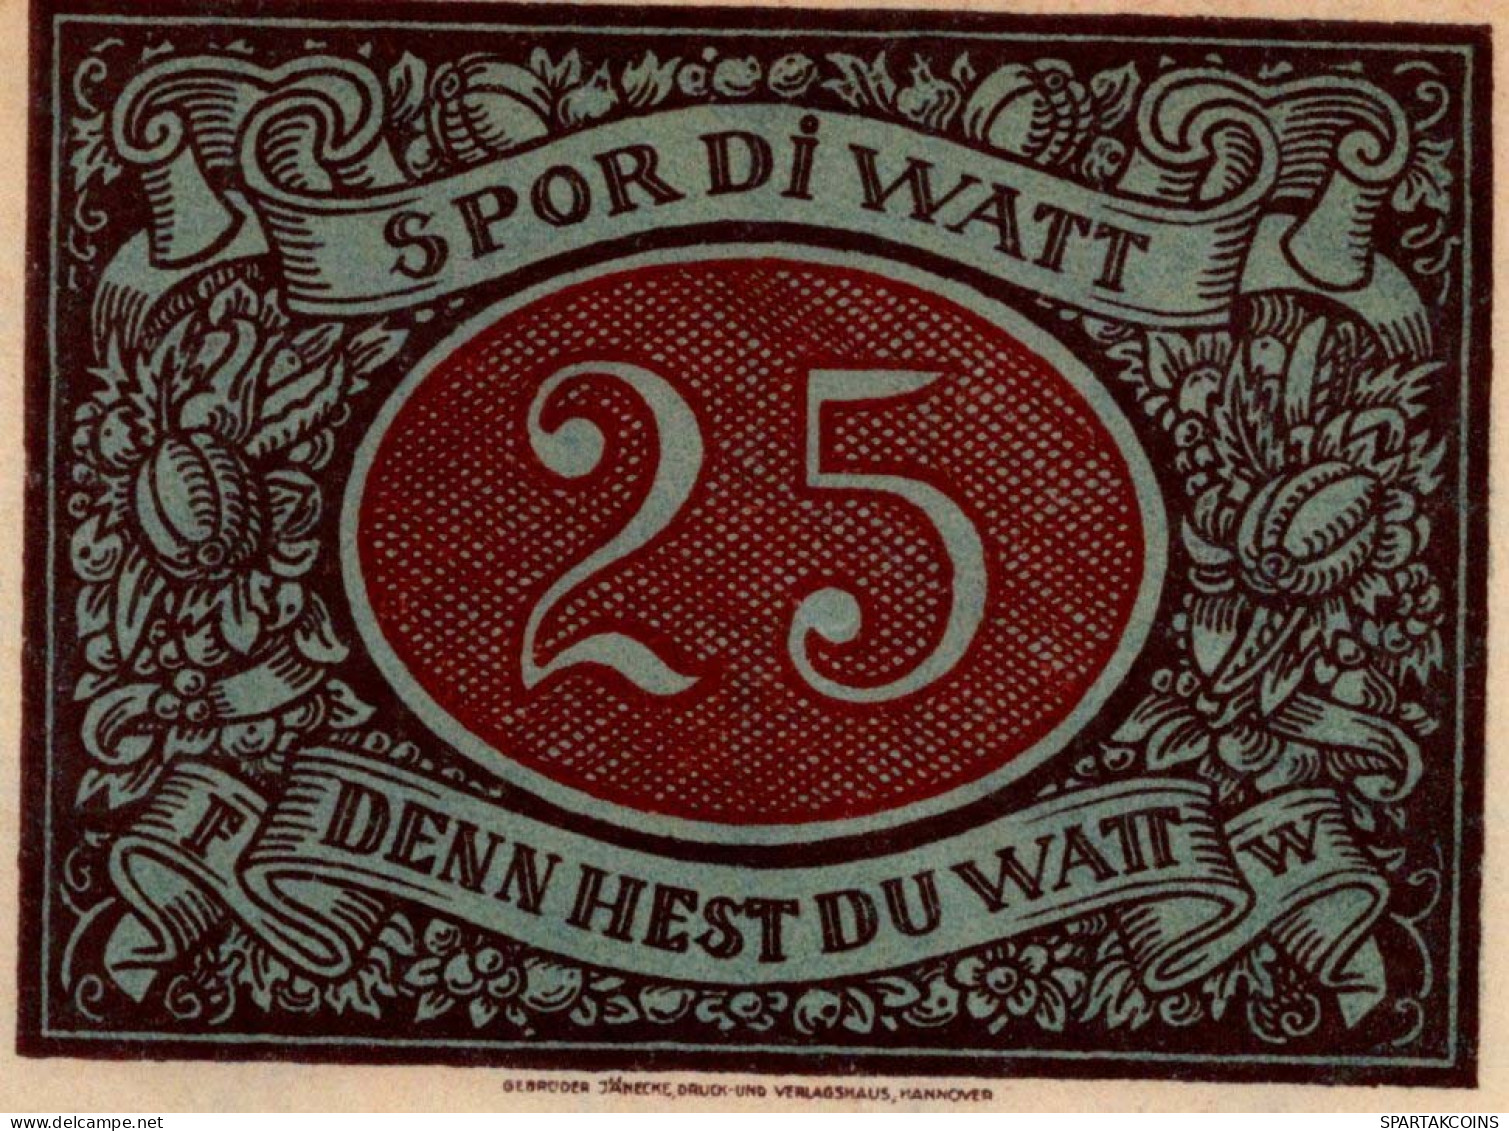 25 PFENNIG 1921 Stadt SCHNEVERDINGEN Hanover UNC DEUTSCHLAND Notgeld #PH960 - Lokale Ausgaben